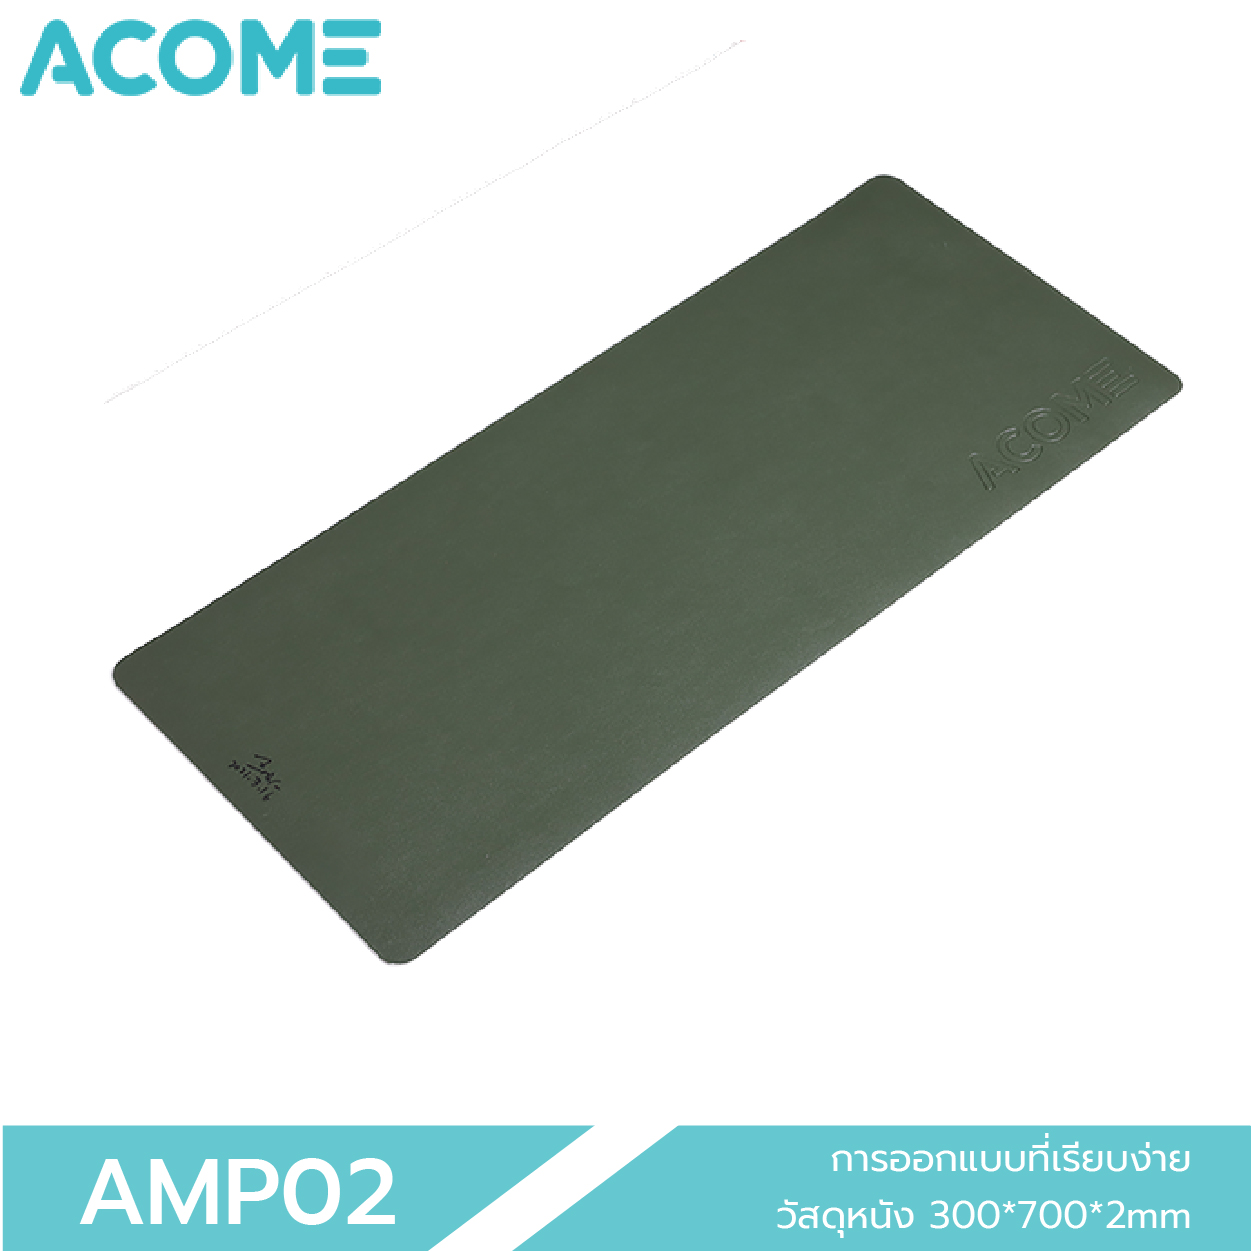 [รับโค๊ดส่วนลด 30 บาท ฟรีทันที] ACOME AMP02 แผ่นรองเมาส์  Mousepad คุณภาพดี สีสันทันสมัย สวยหรู ของแท้ 100% ประกัน 12 เดือน